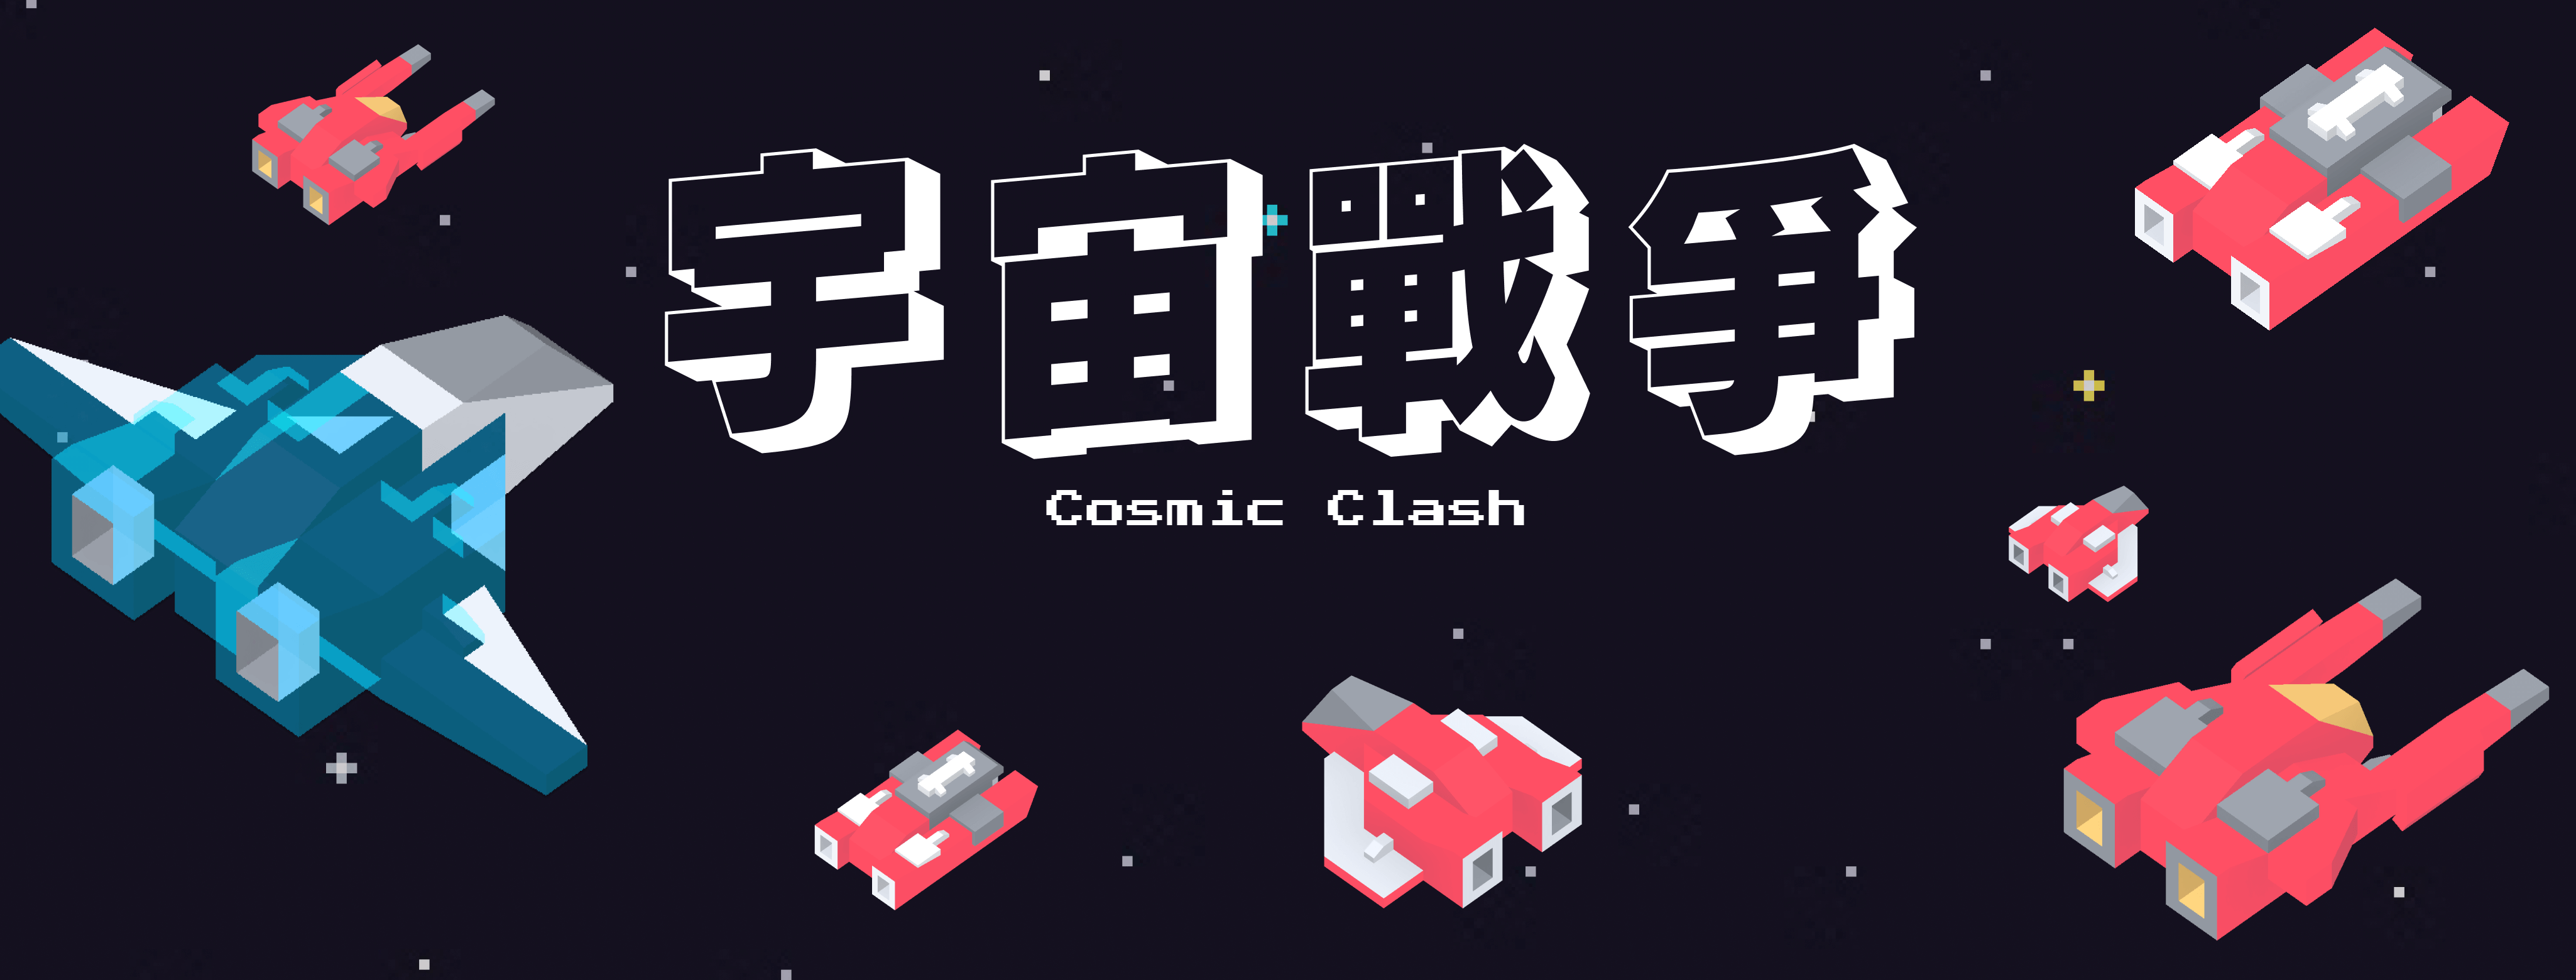 Cosmic Clash